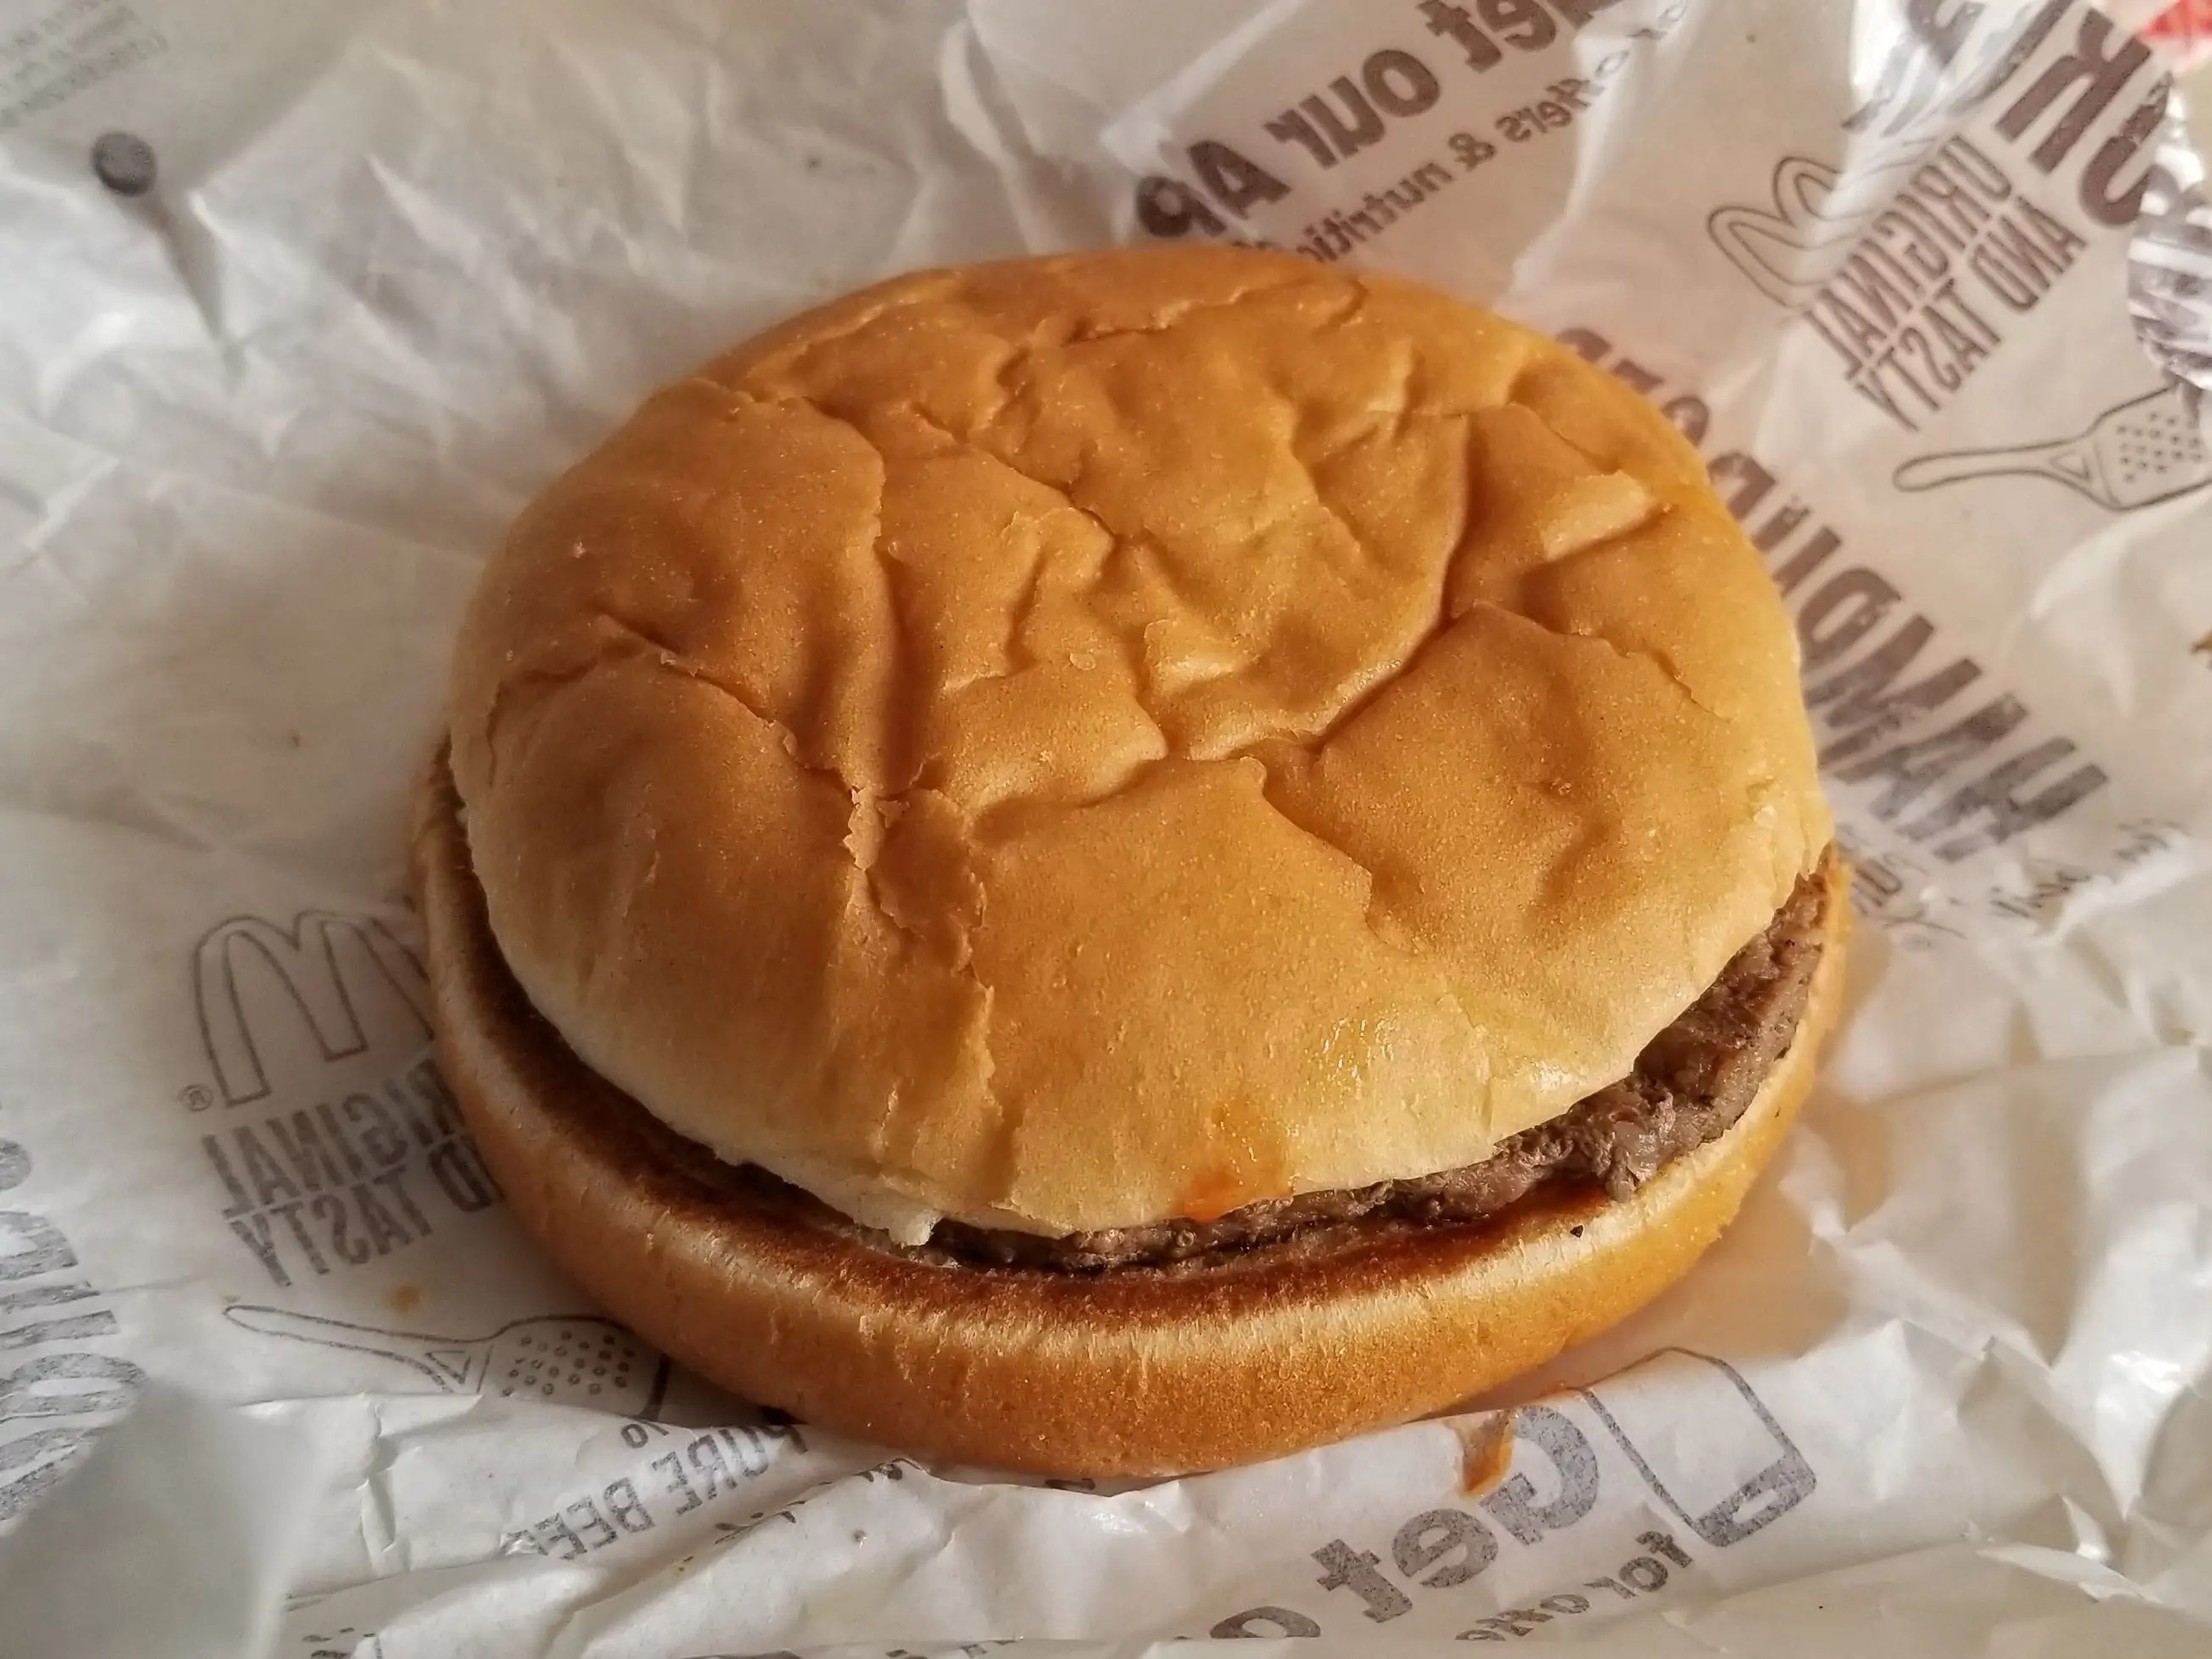 Una hamburguesa de McDonald's.